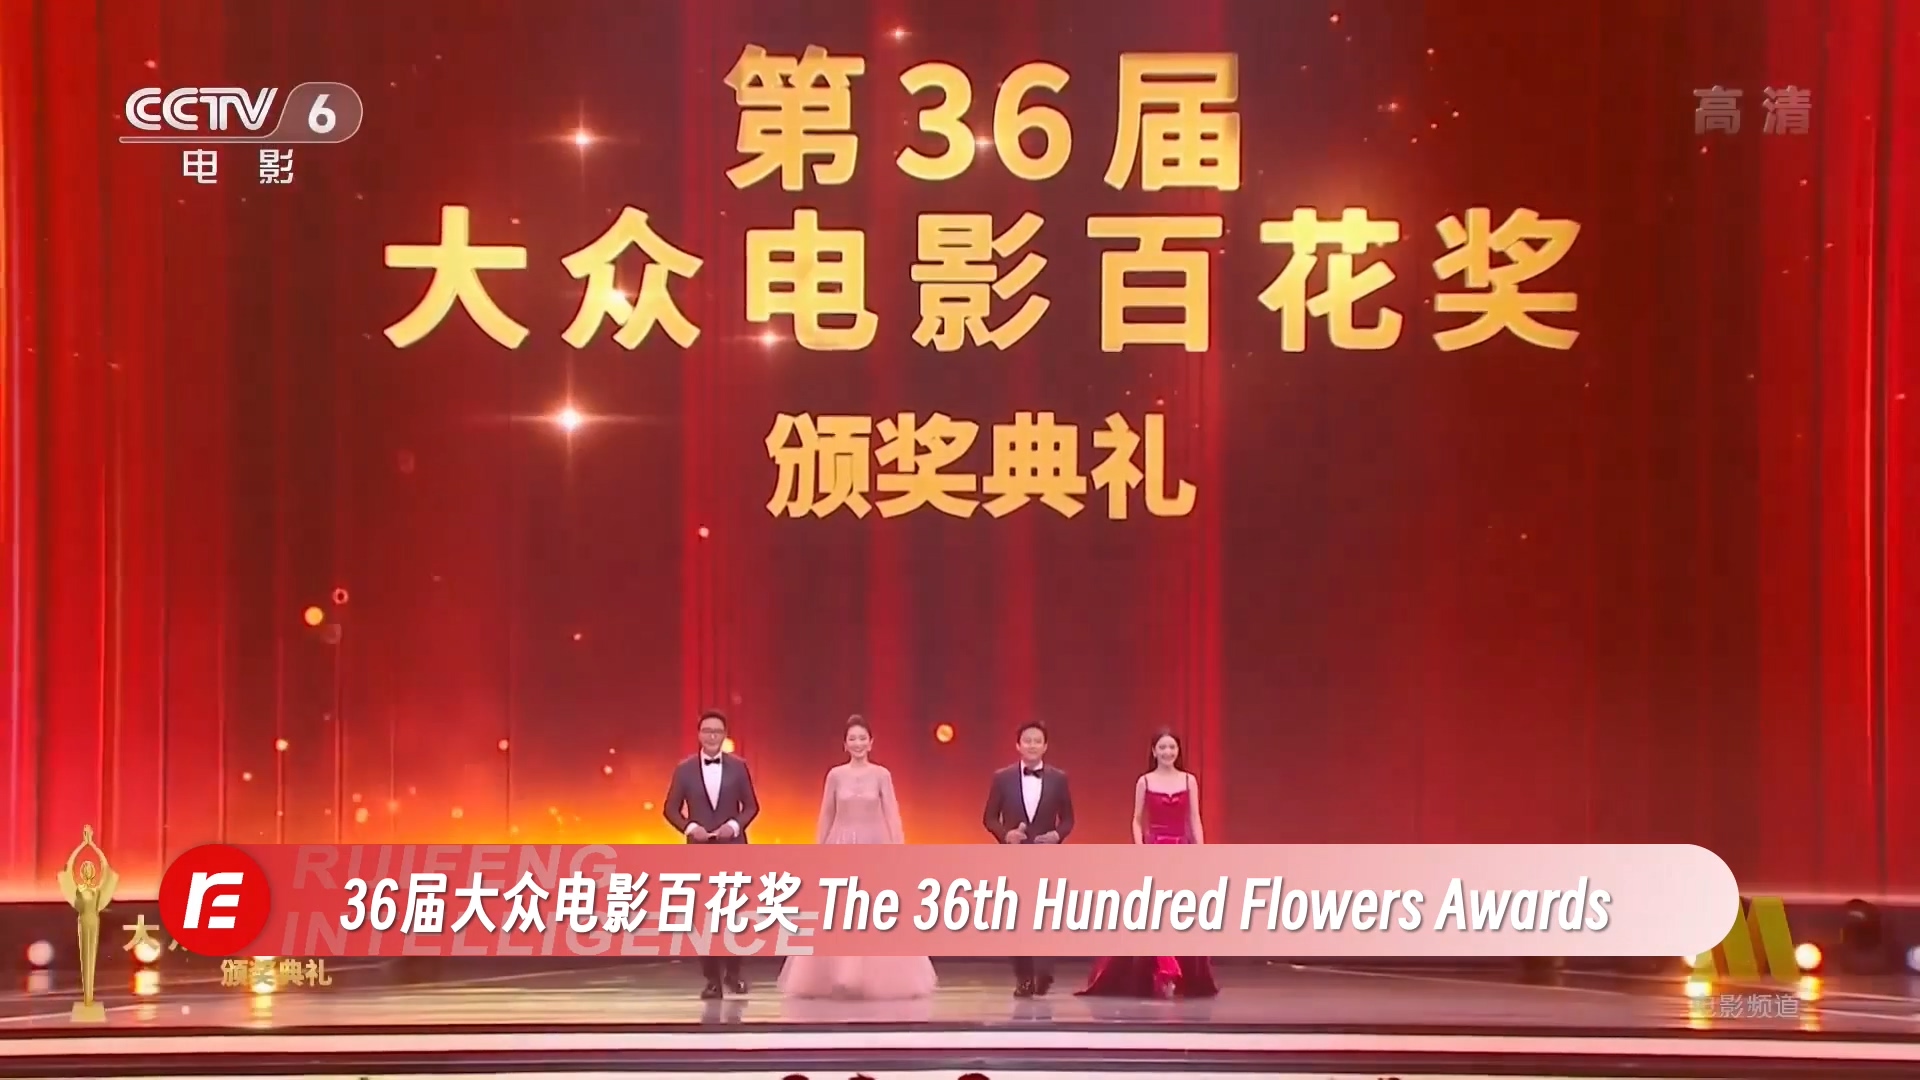 Hundred Flowers Awards